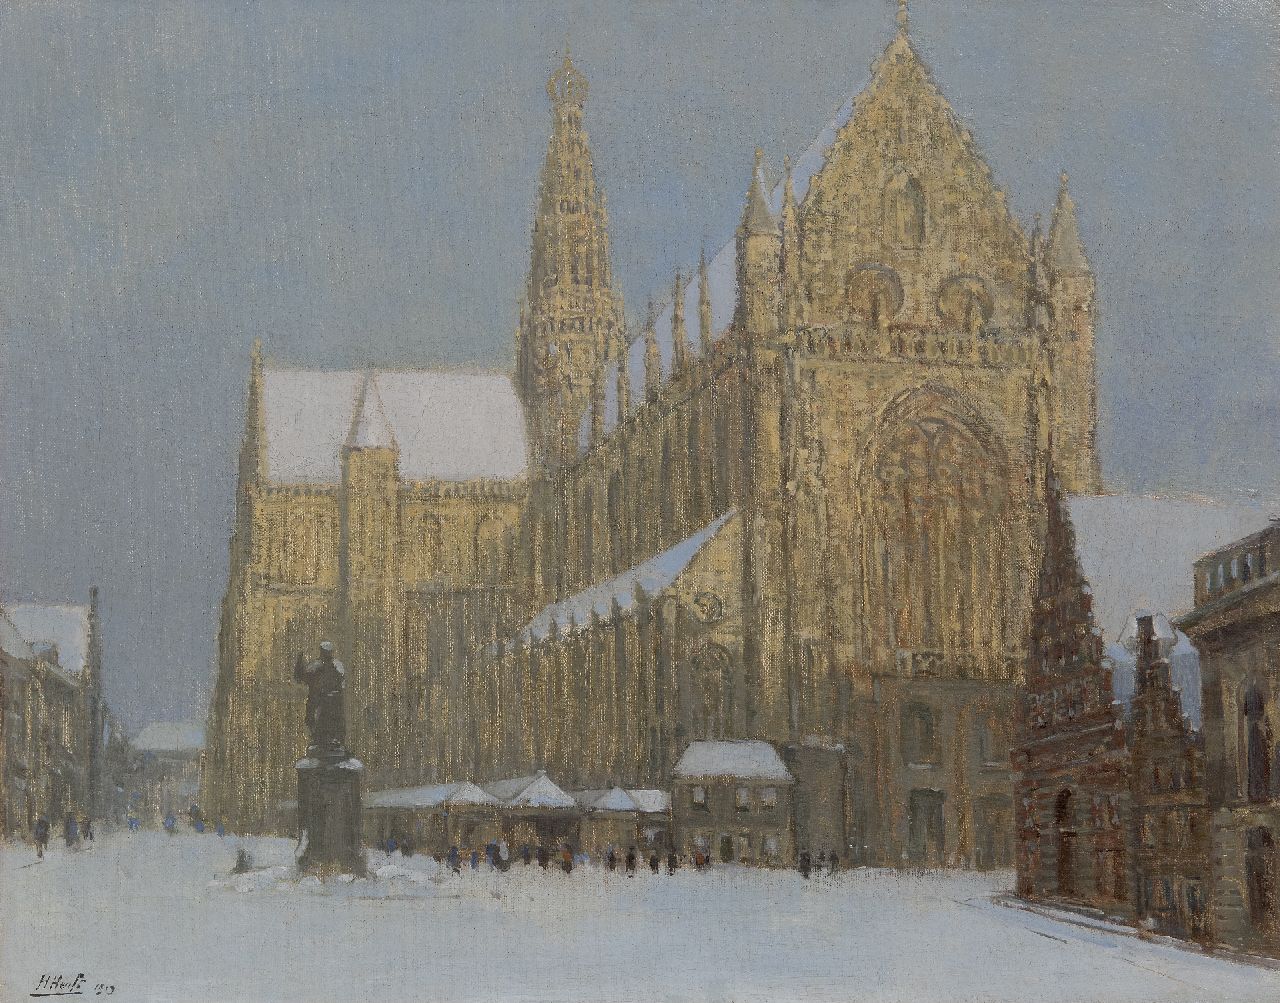 Herman Heuff | De St. Bavokerk in Haarlem in de sneeuw, olieverf op doek, 49,3 x 63,2 cm, gesigneerd l.o. en gedateerd 1919